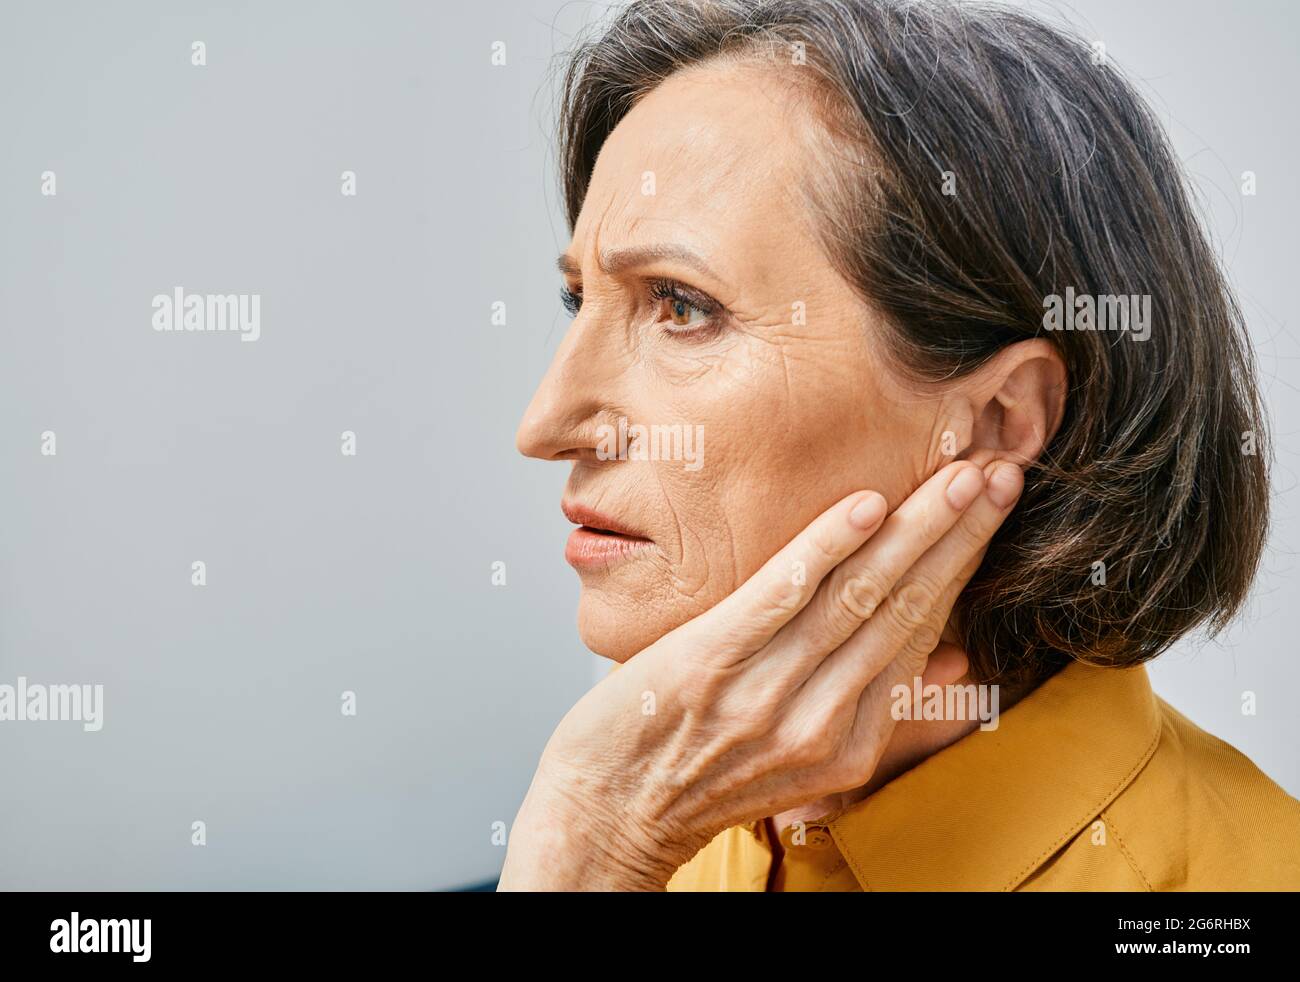 Pérdida auditiva. Mujer madura con problemas de audición al tocar el oído con la mano. Vista lateral, dolor de oídos Foto de stock